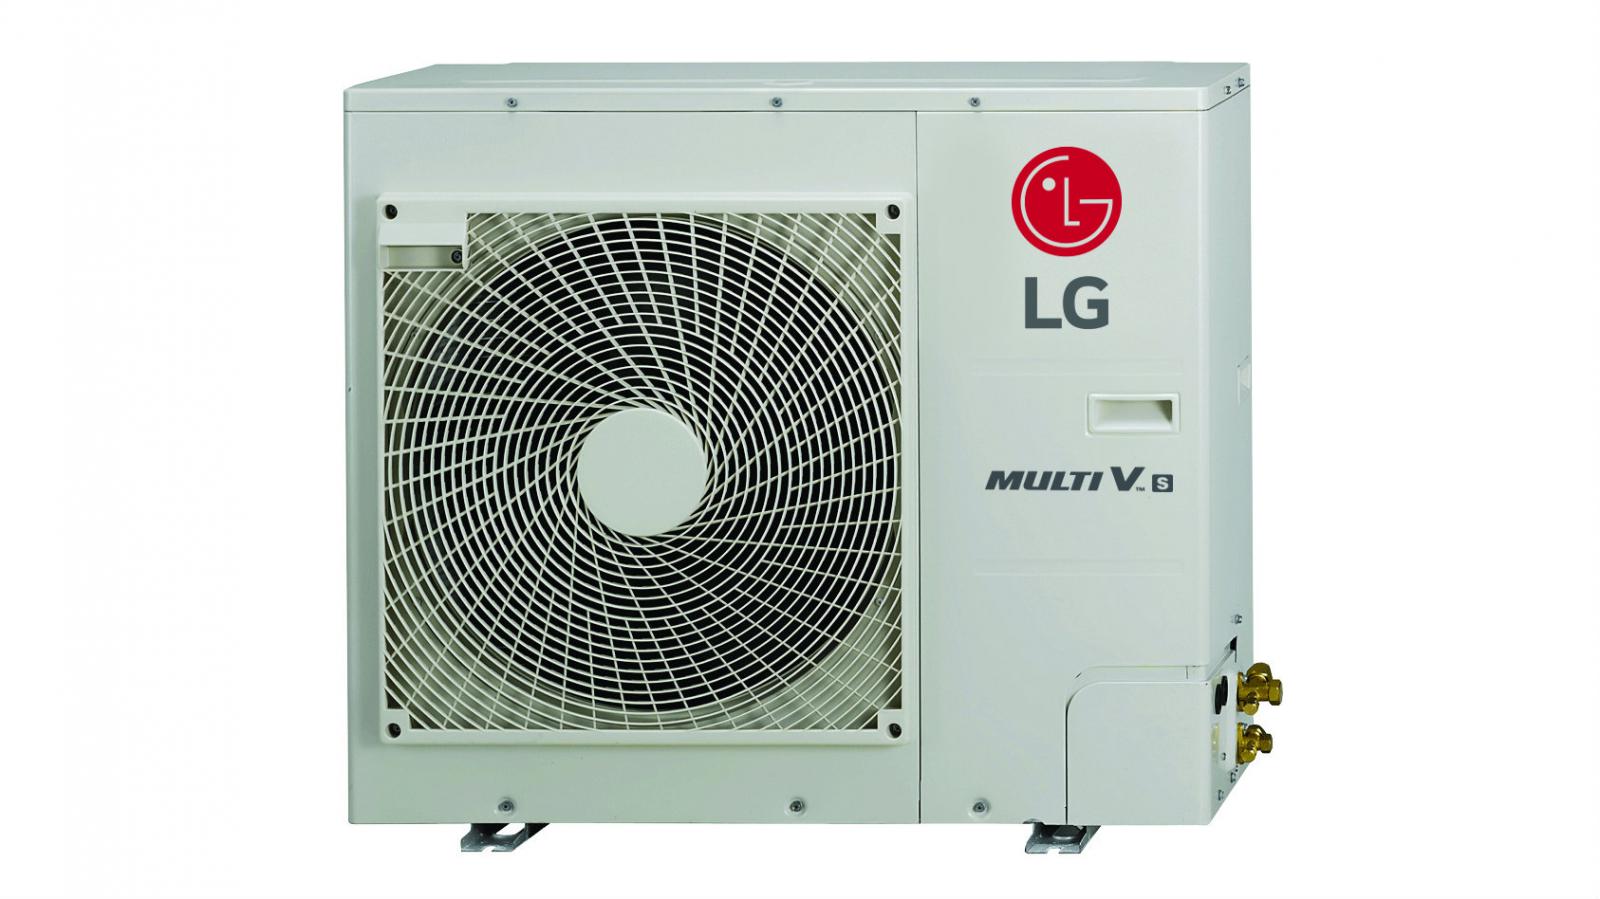 Η LG παρουσιάζει το νέο σύστημα ψύξης-θέρμανσης MULTI V S